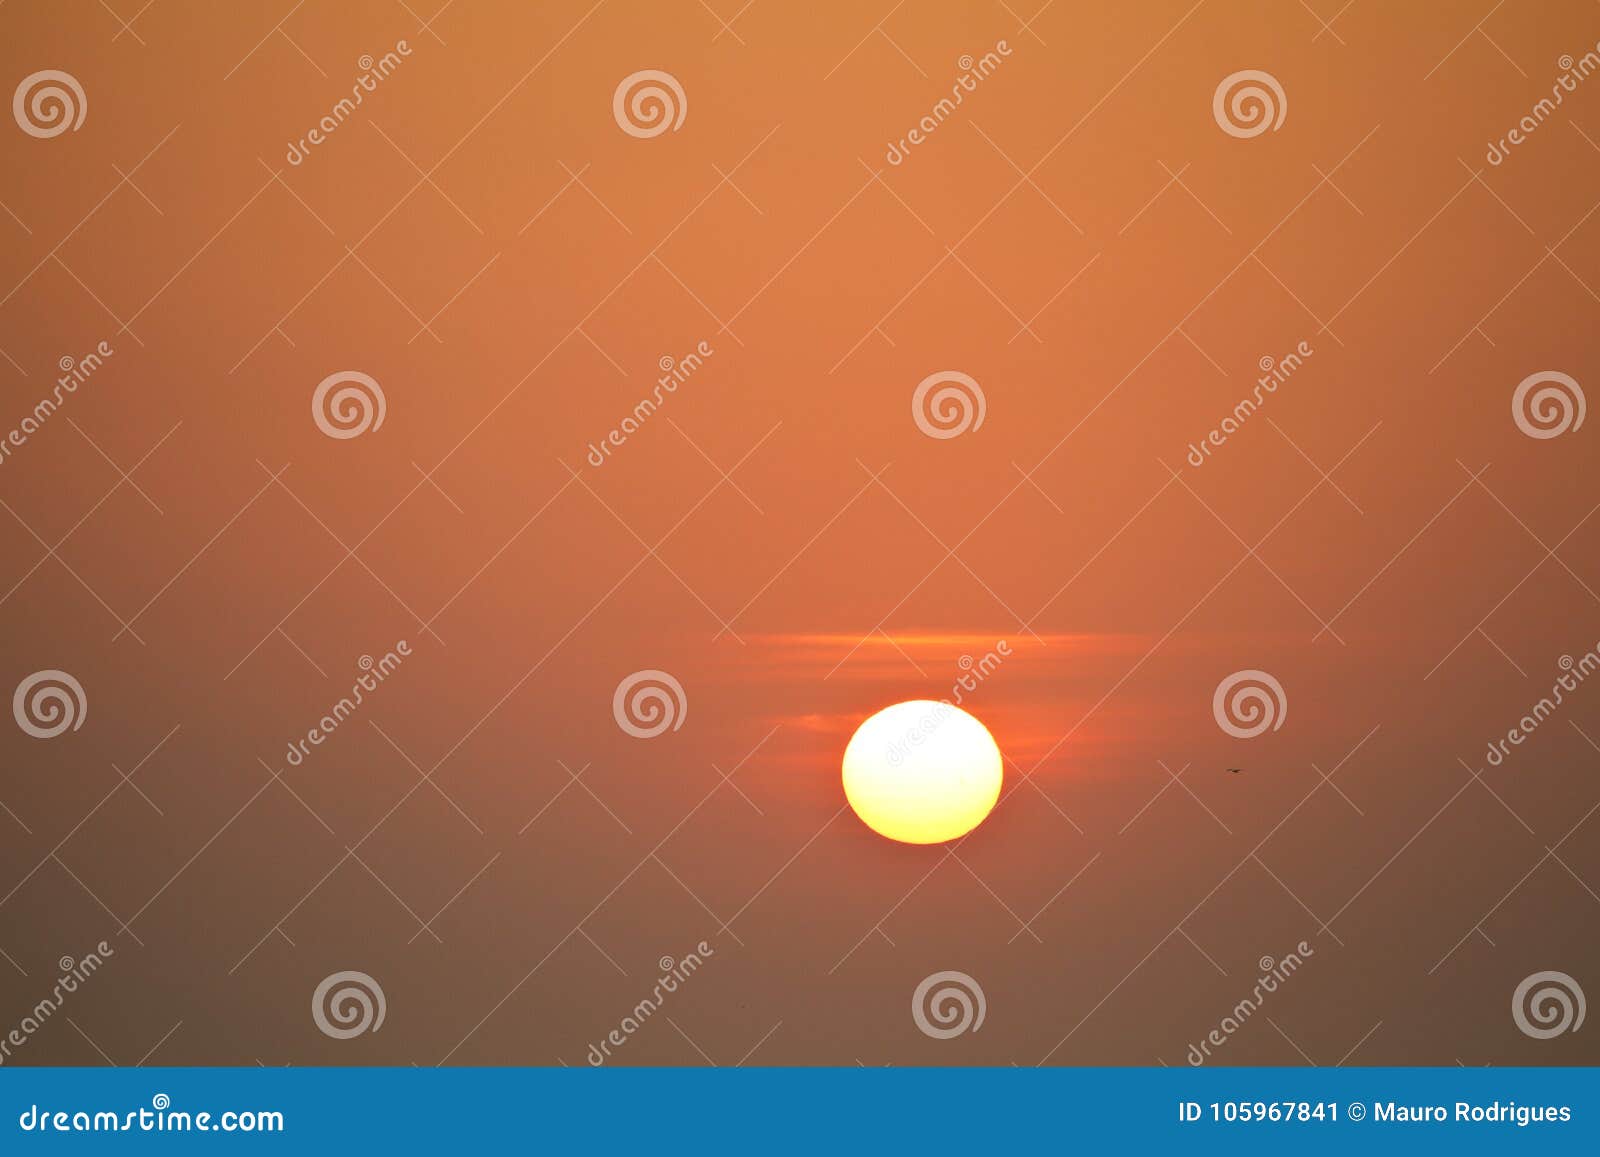 红色太阳矢量图图片素材-编号39934022-图行天下